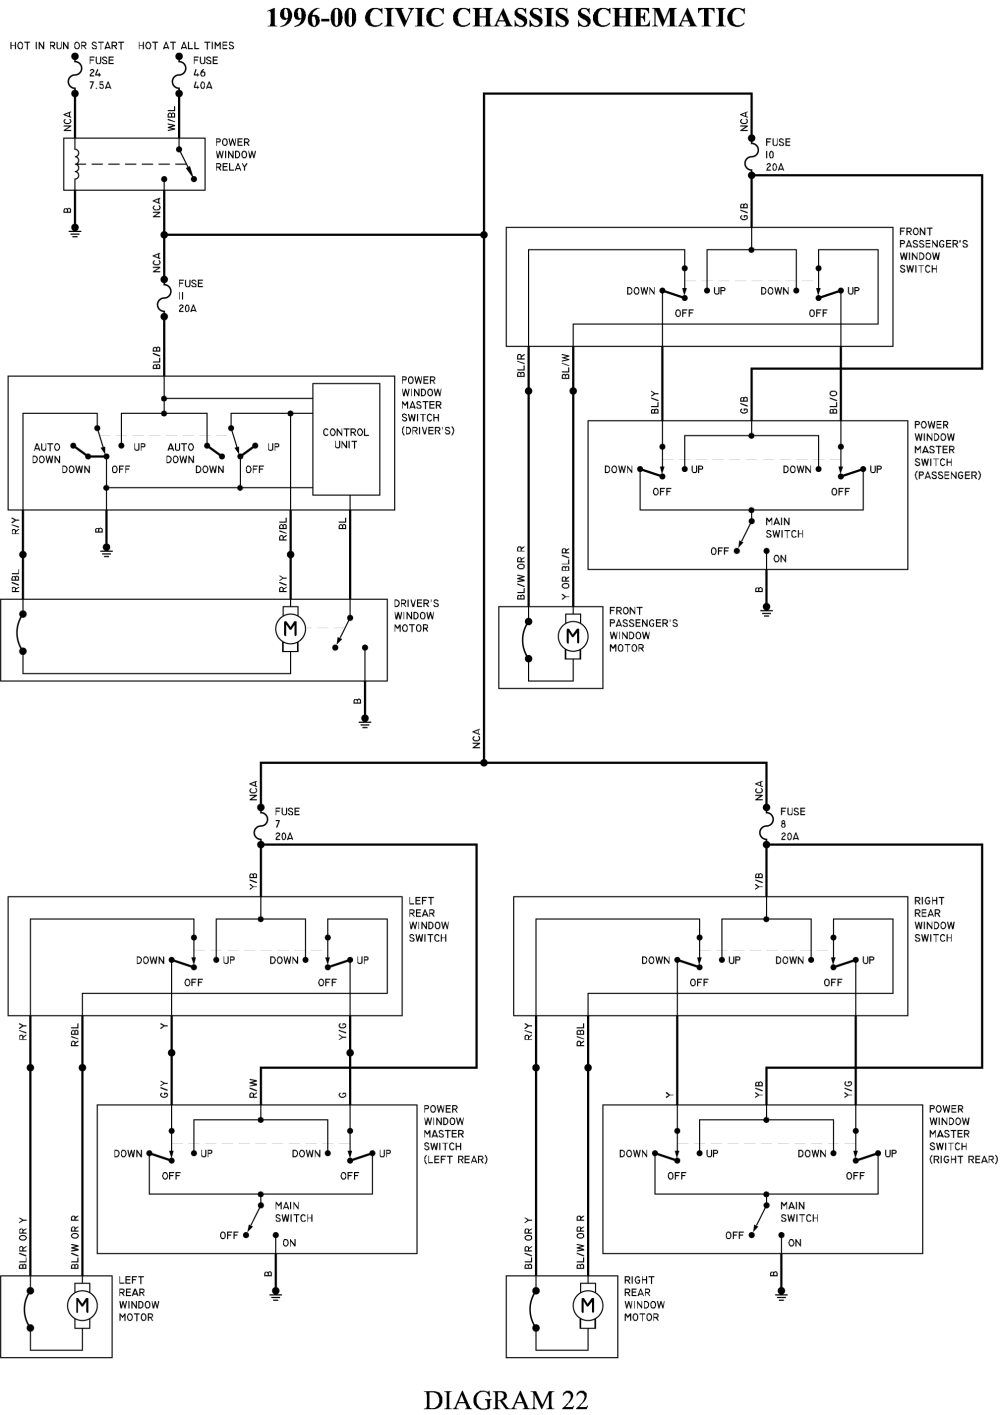 3104998 relay kit wiring diagram